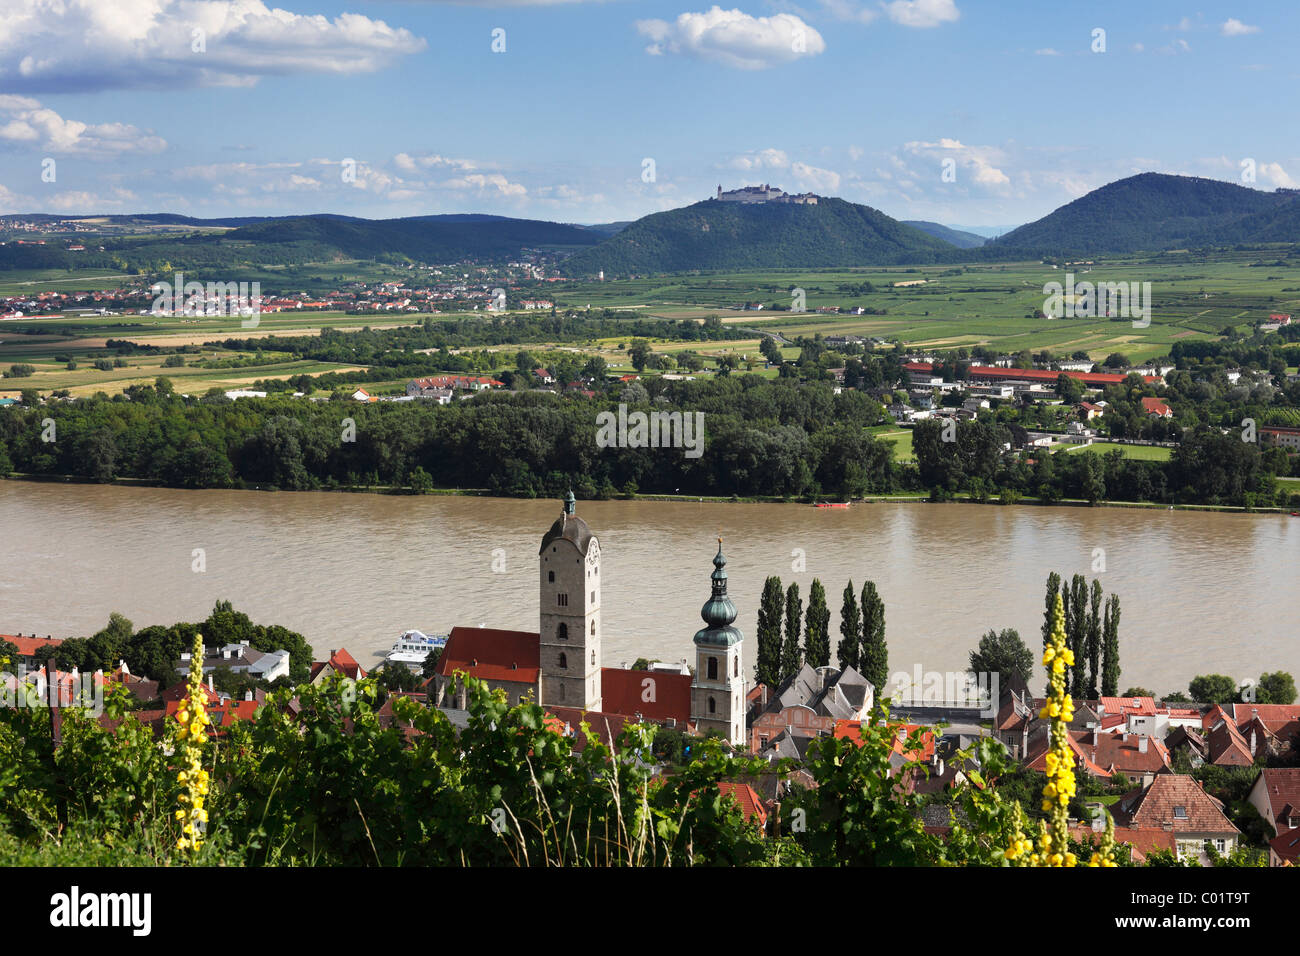 Stein an der Donau district, Goettweig Abbey at the back, Wachau valley, Waldviertel region, Lower Austria, Austria, Europe Stock Photo